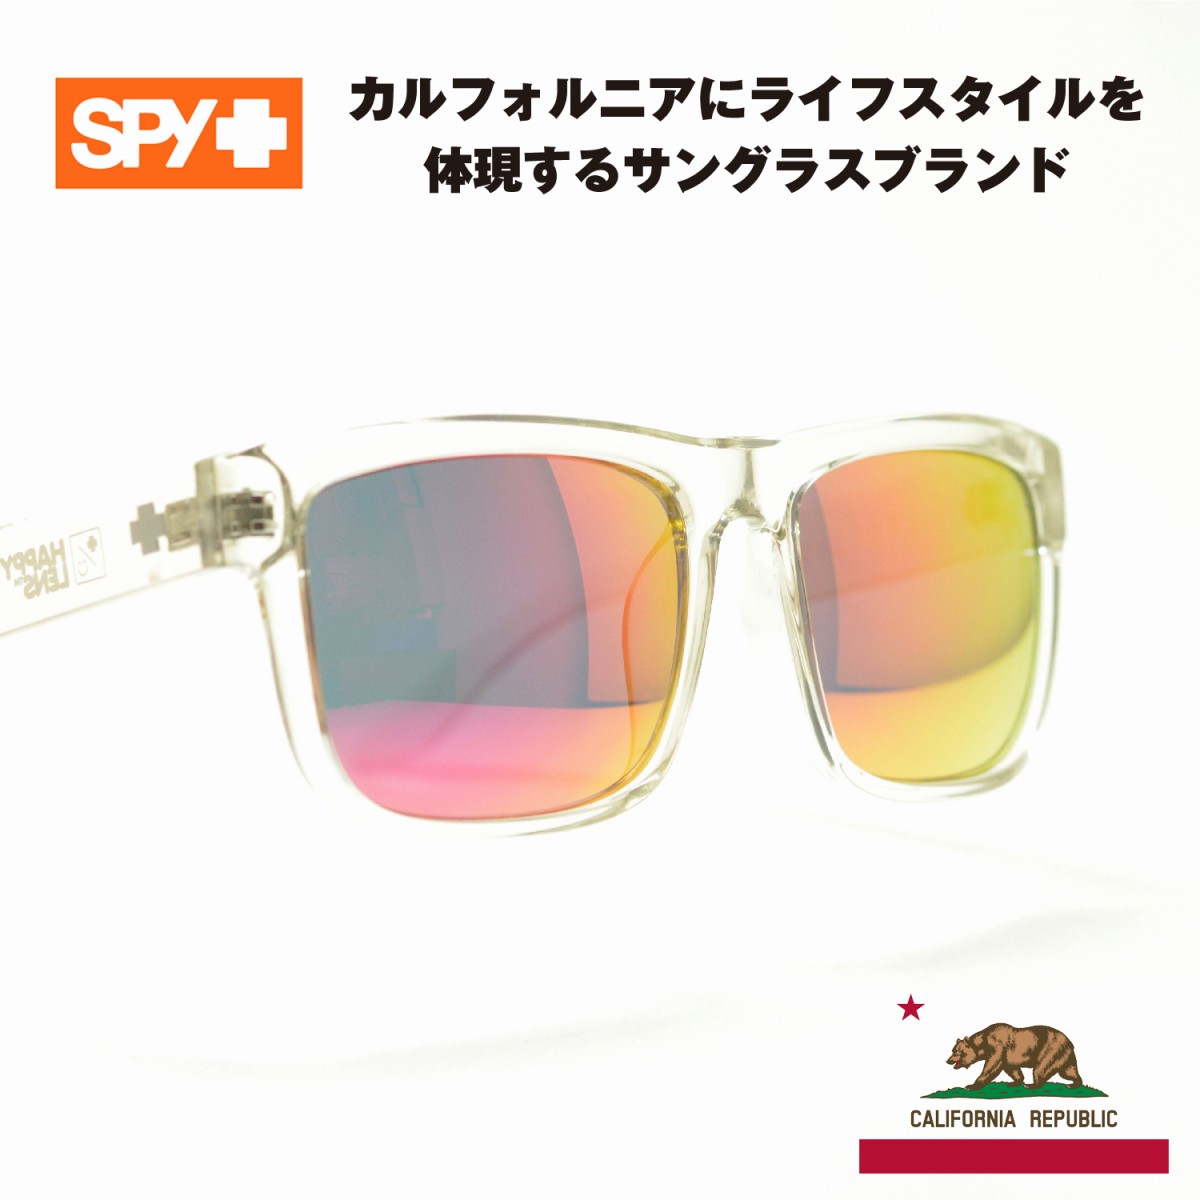 SPY スパイ DISCORD ディスコード クリア/グレーピンクミラー メガネ 眼鏡 めがね メンズ レディース おしゃれ ブランド 人気 おすすめ フレーム 流行り 度付き レンズ サングラス